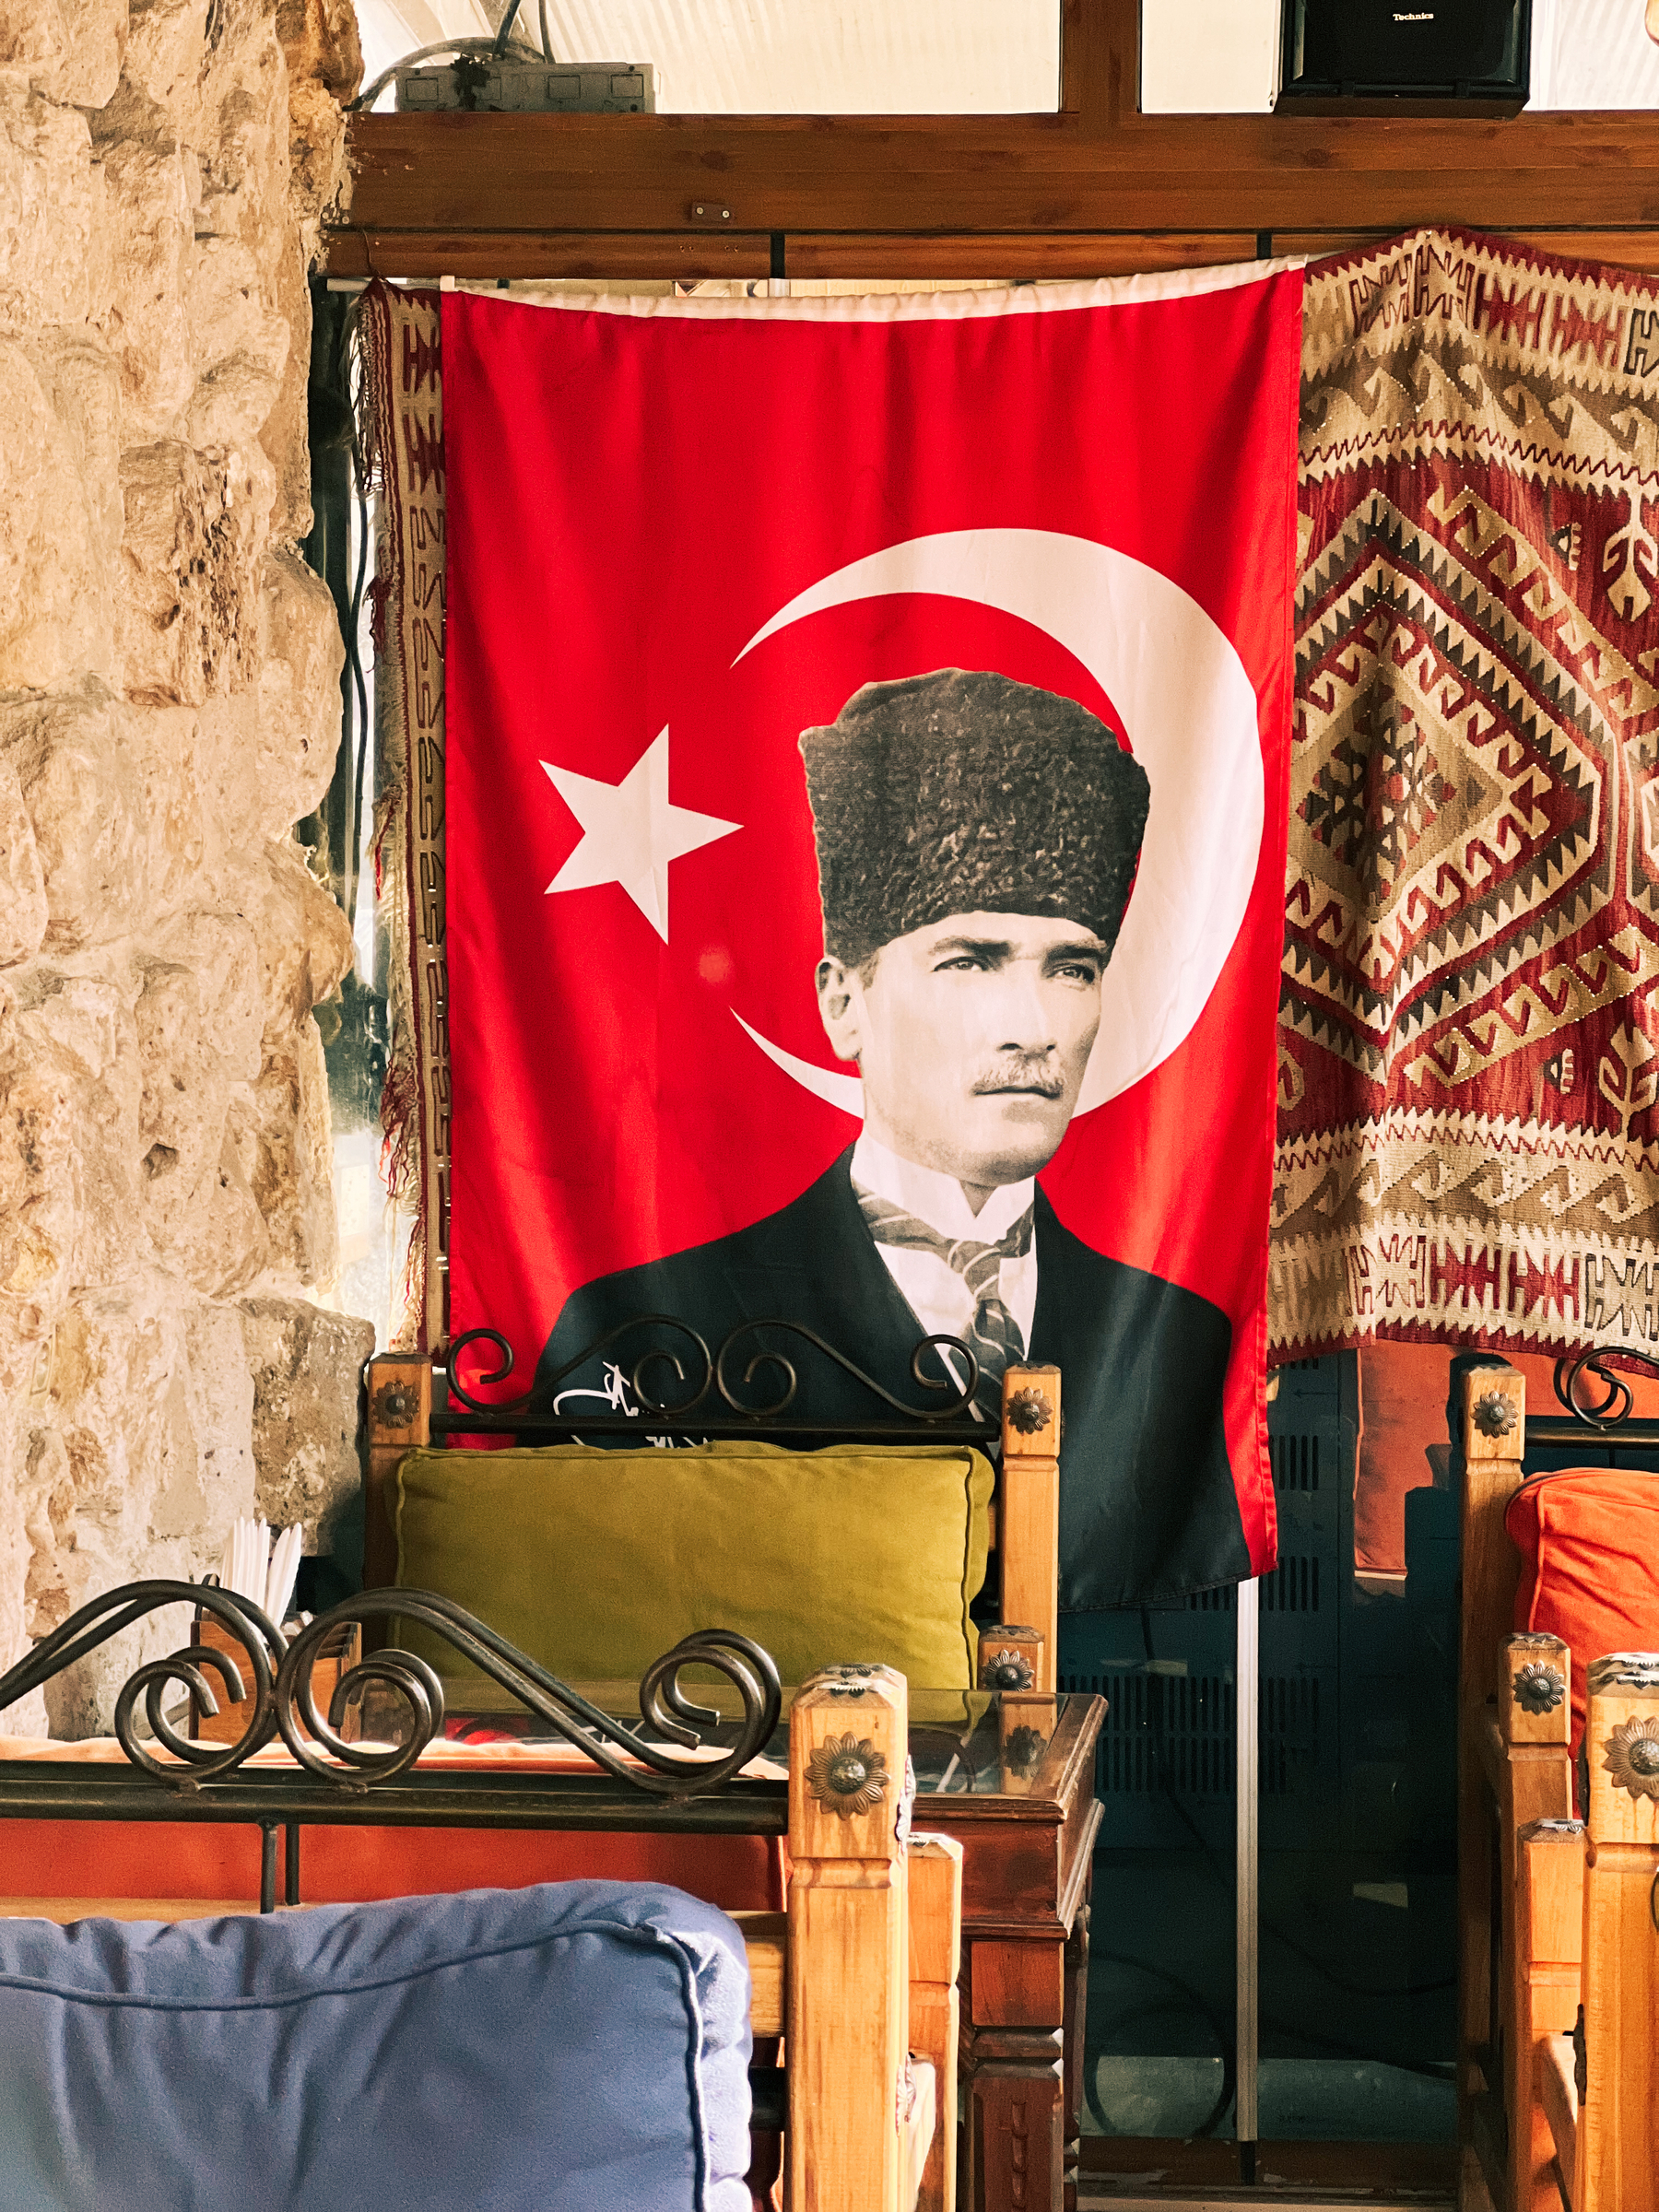 Ataturk on a Turkish flag.